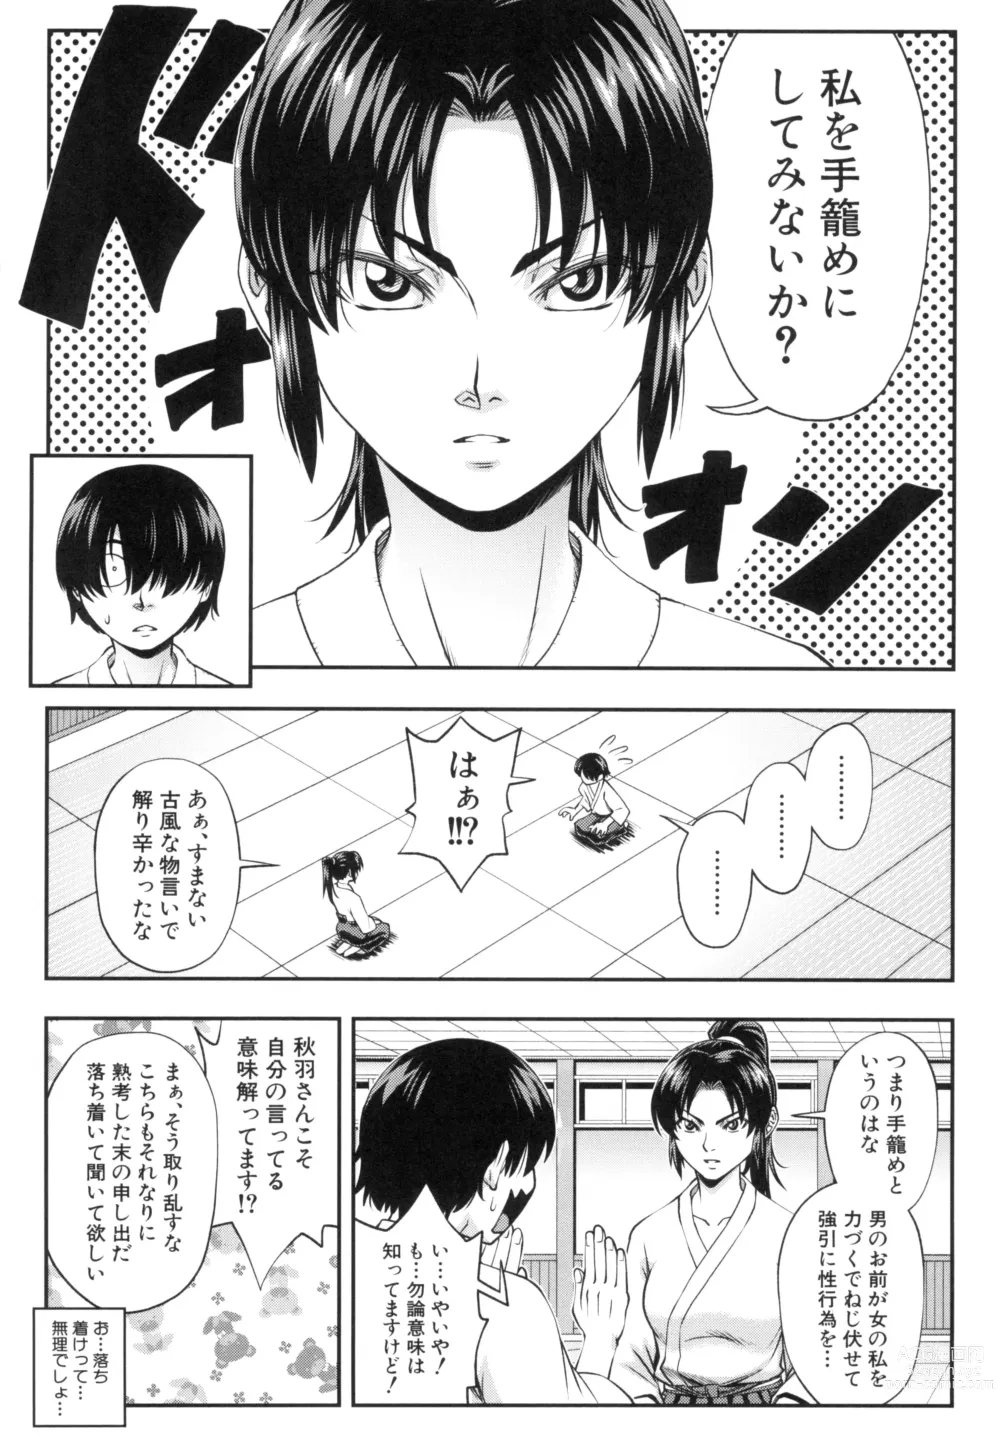 Page 5 of manga Yareba Yaru Hodo Suki ni Naru